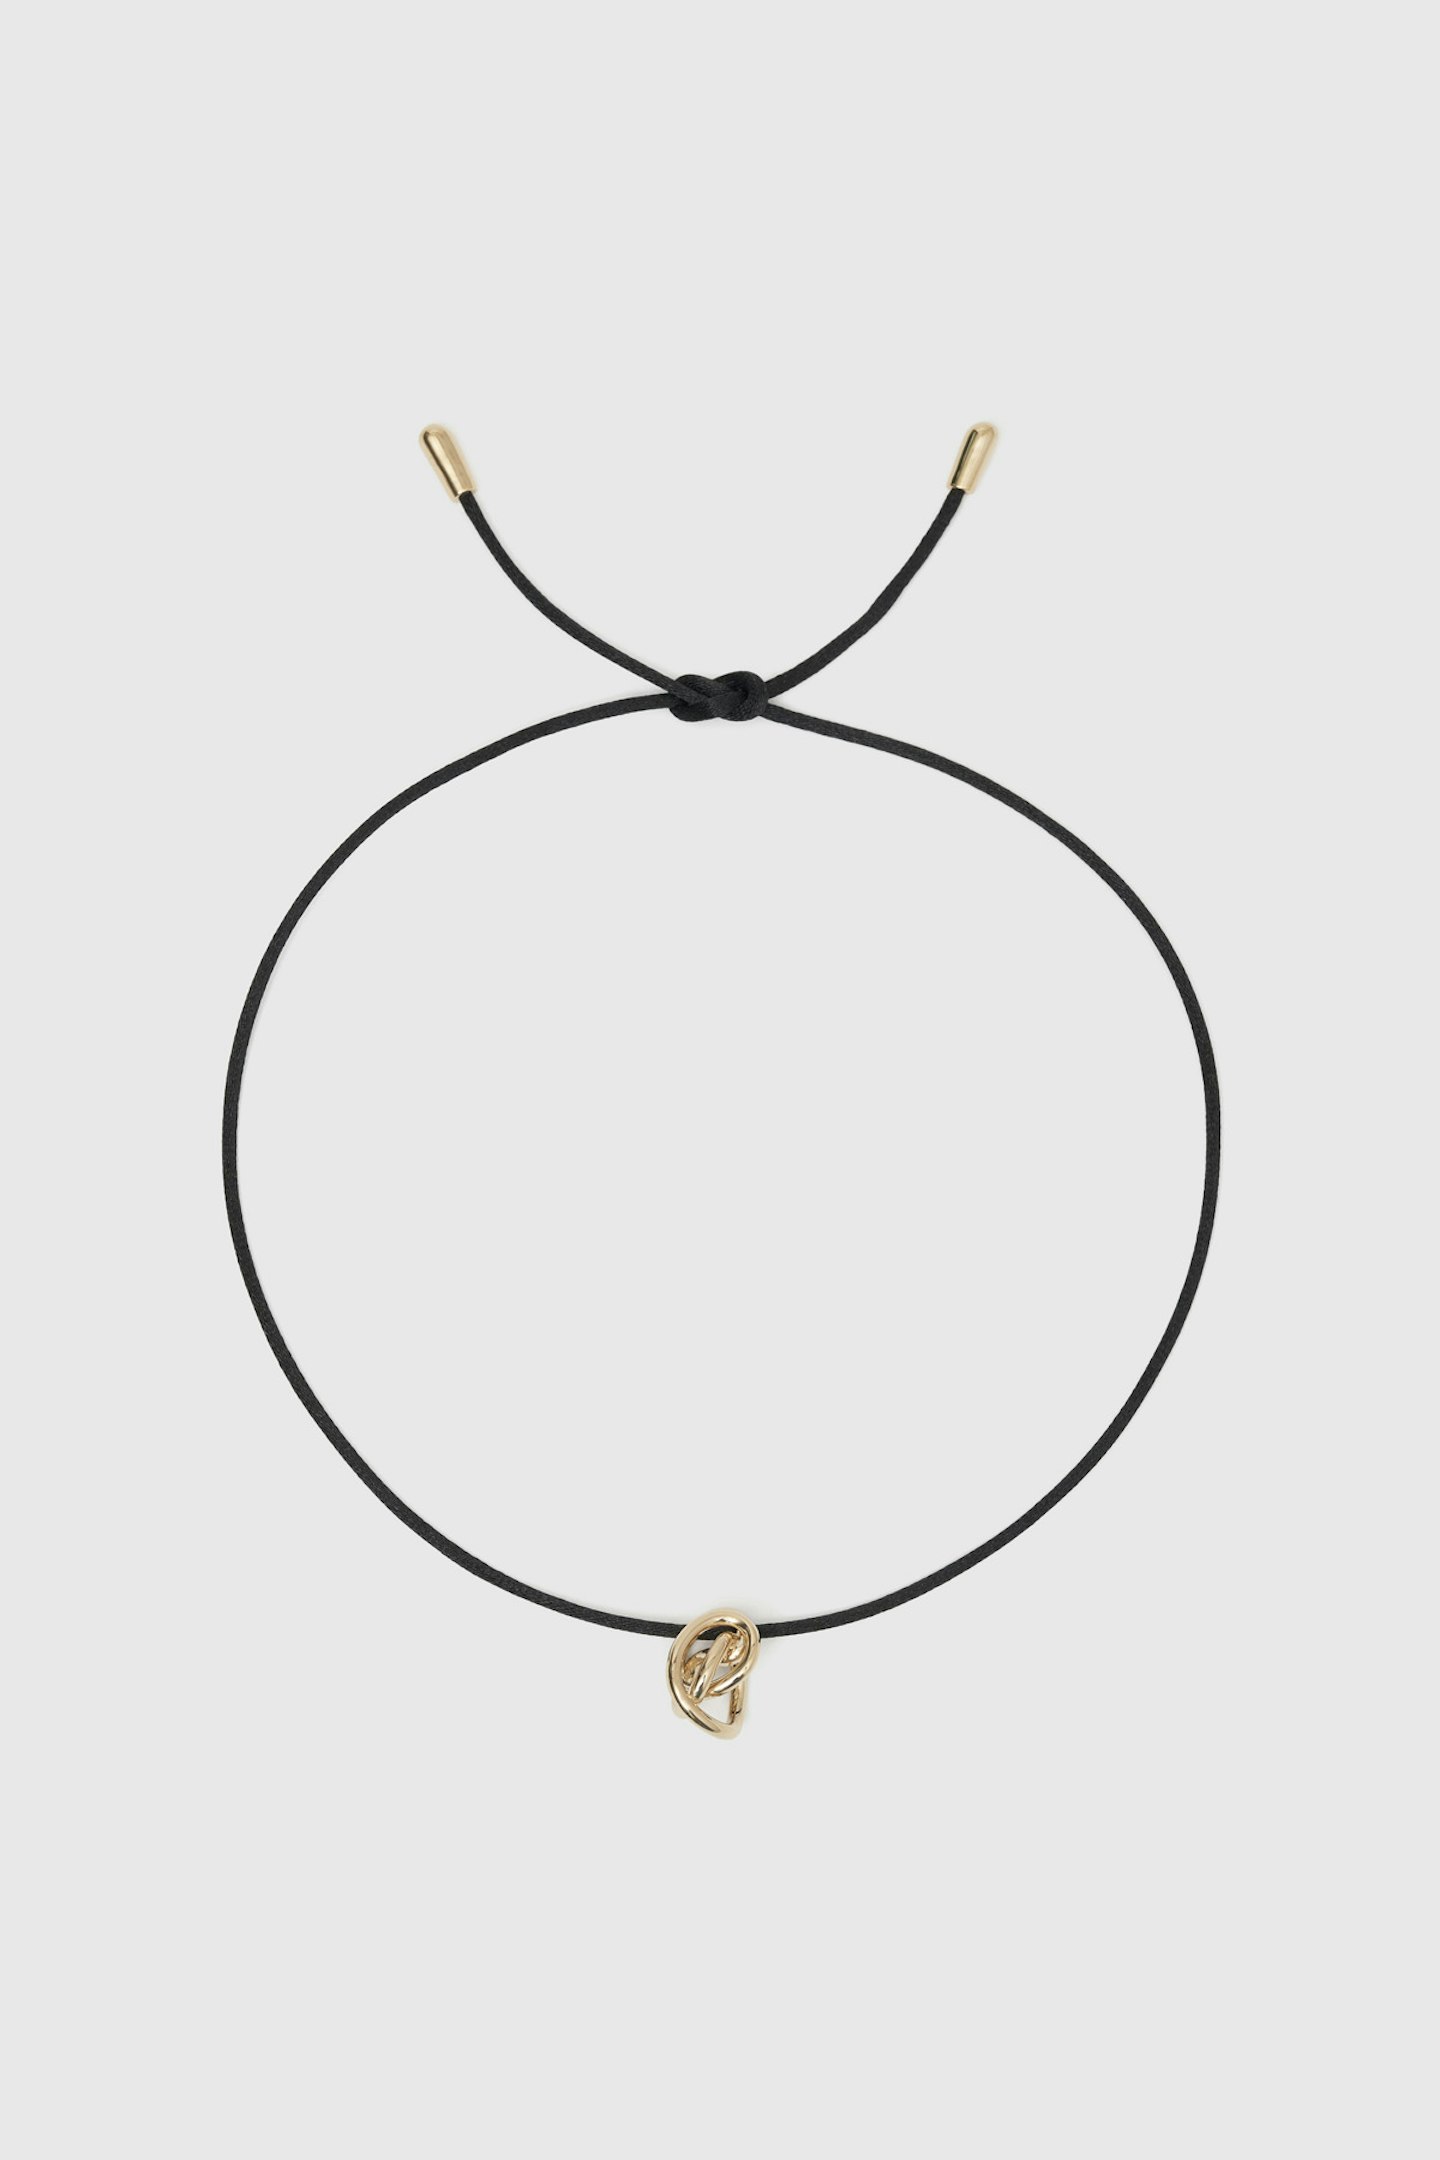 Vivienne Surfer Pendant, 3 Golds, Lacquer & Diamonds - Jewelry